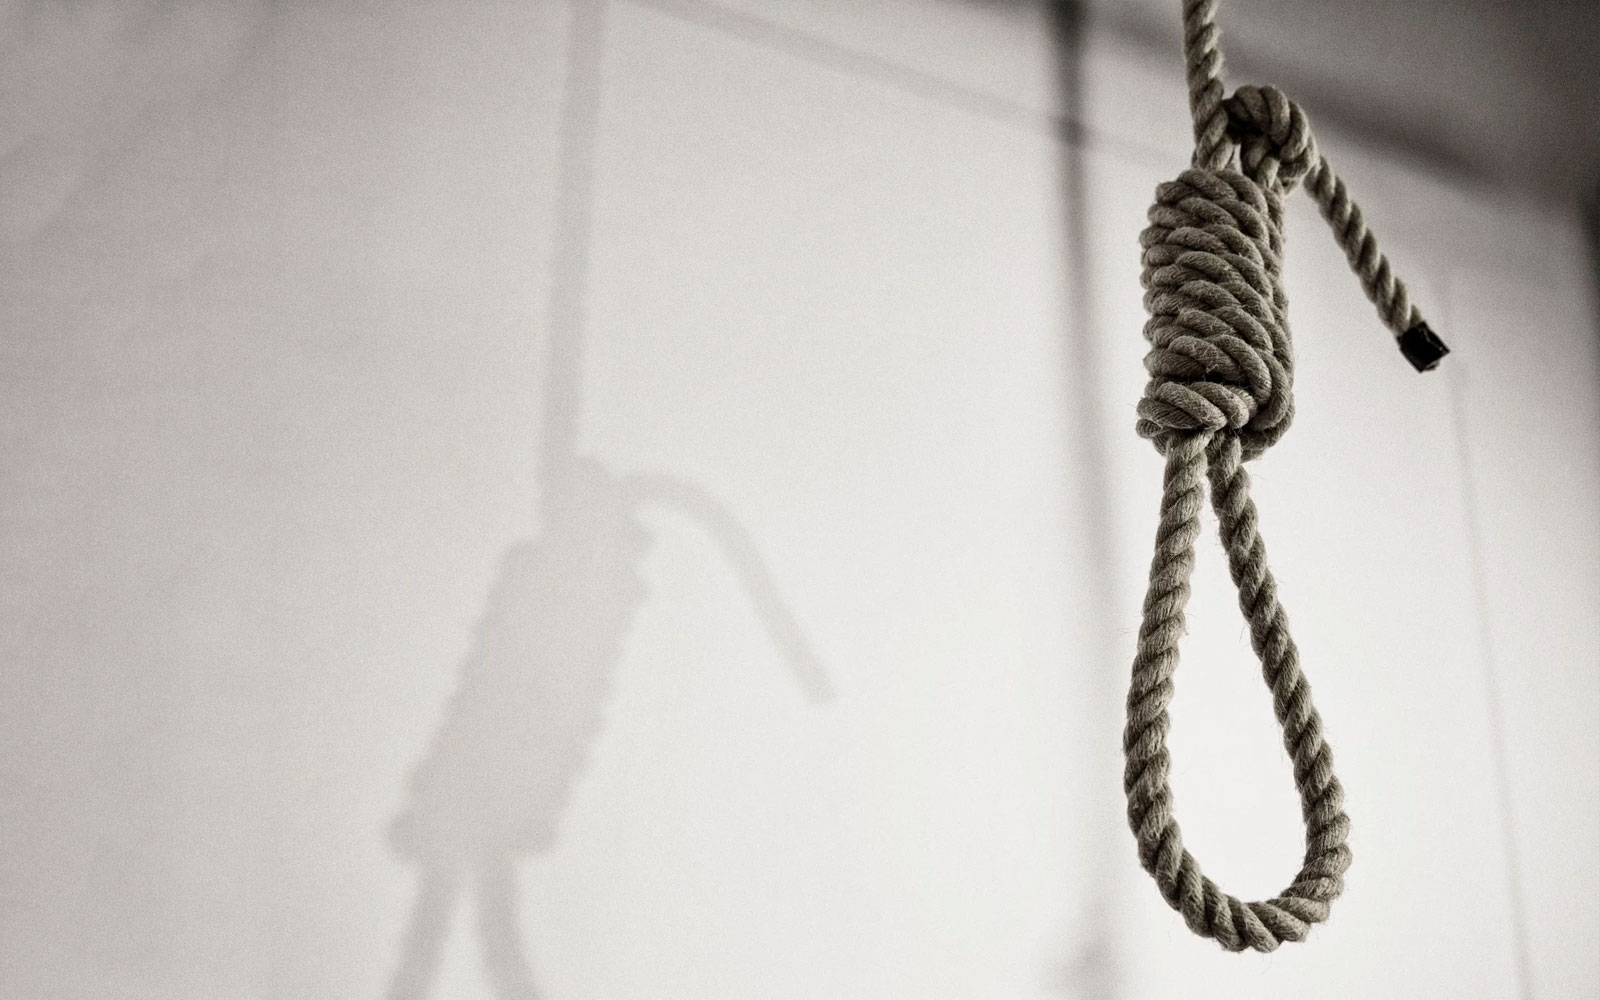 إلغاء عقوبة الإعدام بالمغرب